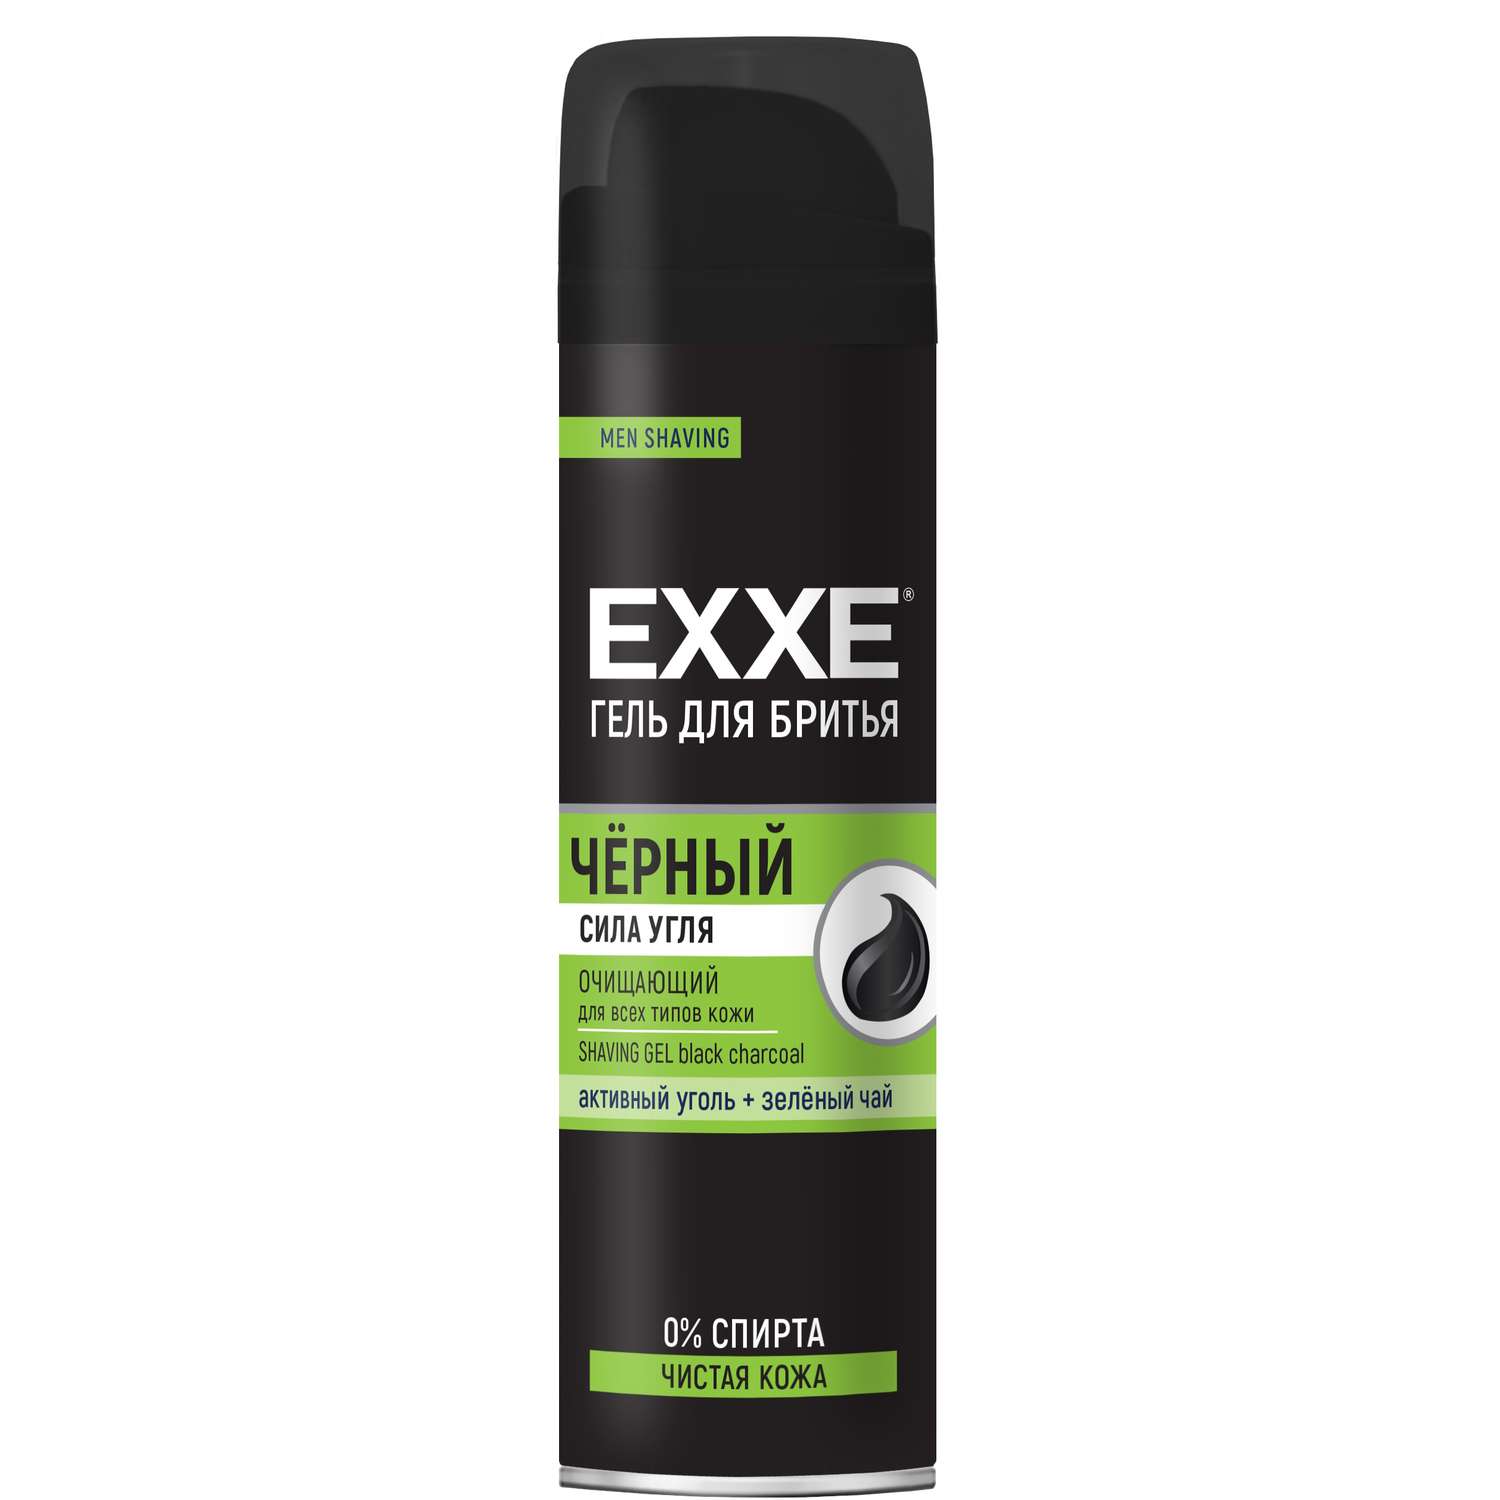 Гель для бритья Exxe для всех типов кожи Черный 200мл - фото 1